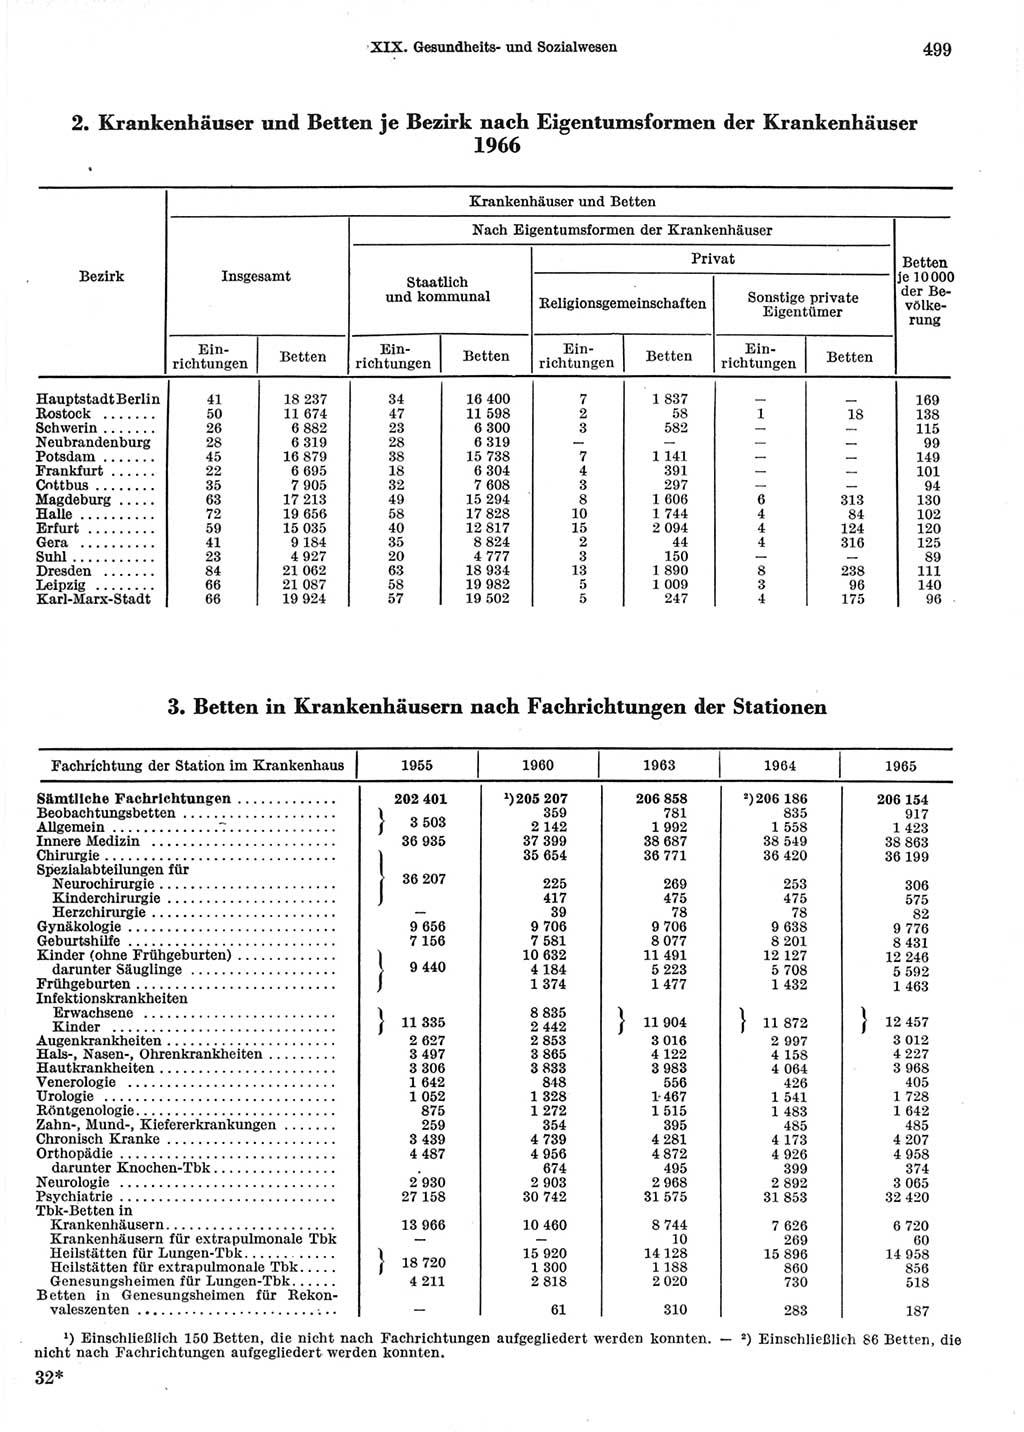 Statistisches Jahrbuch der Deutschen Demokratischen Republik (DDR) 1967, Seite 499 (Stat. Jb. DDR 1967, S. 499)